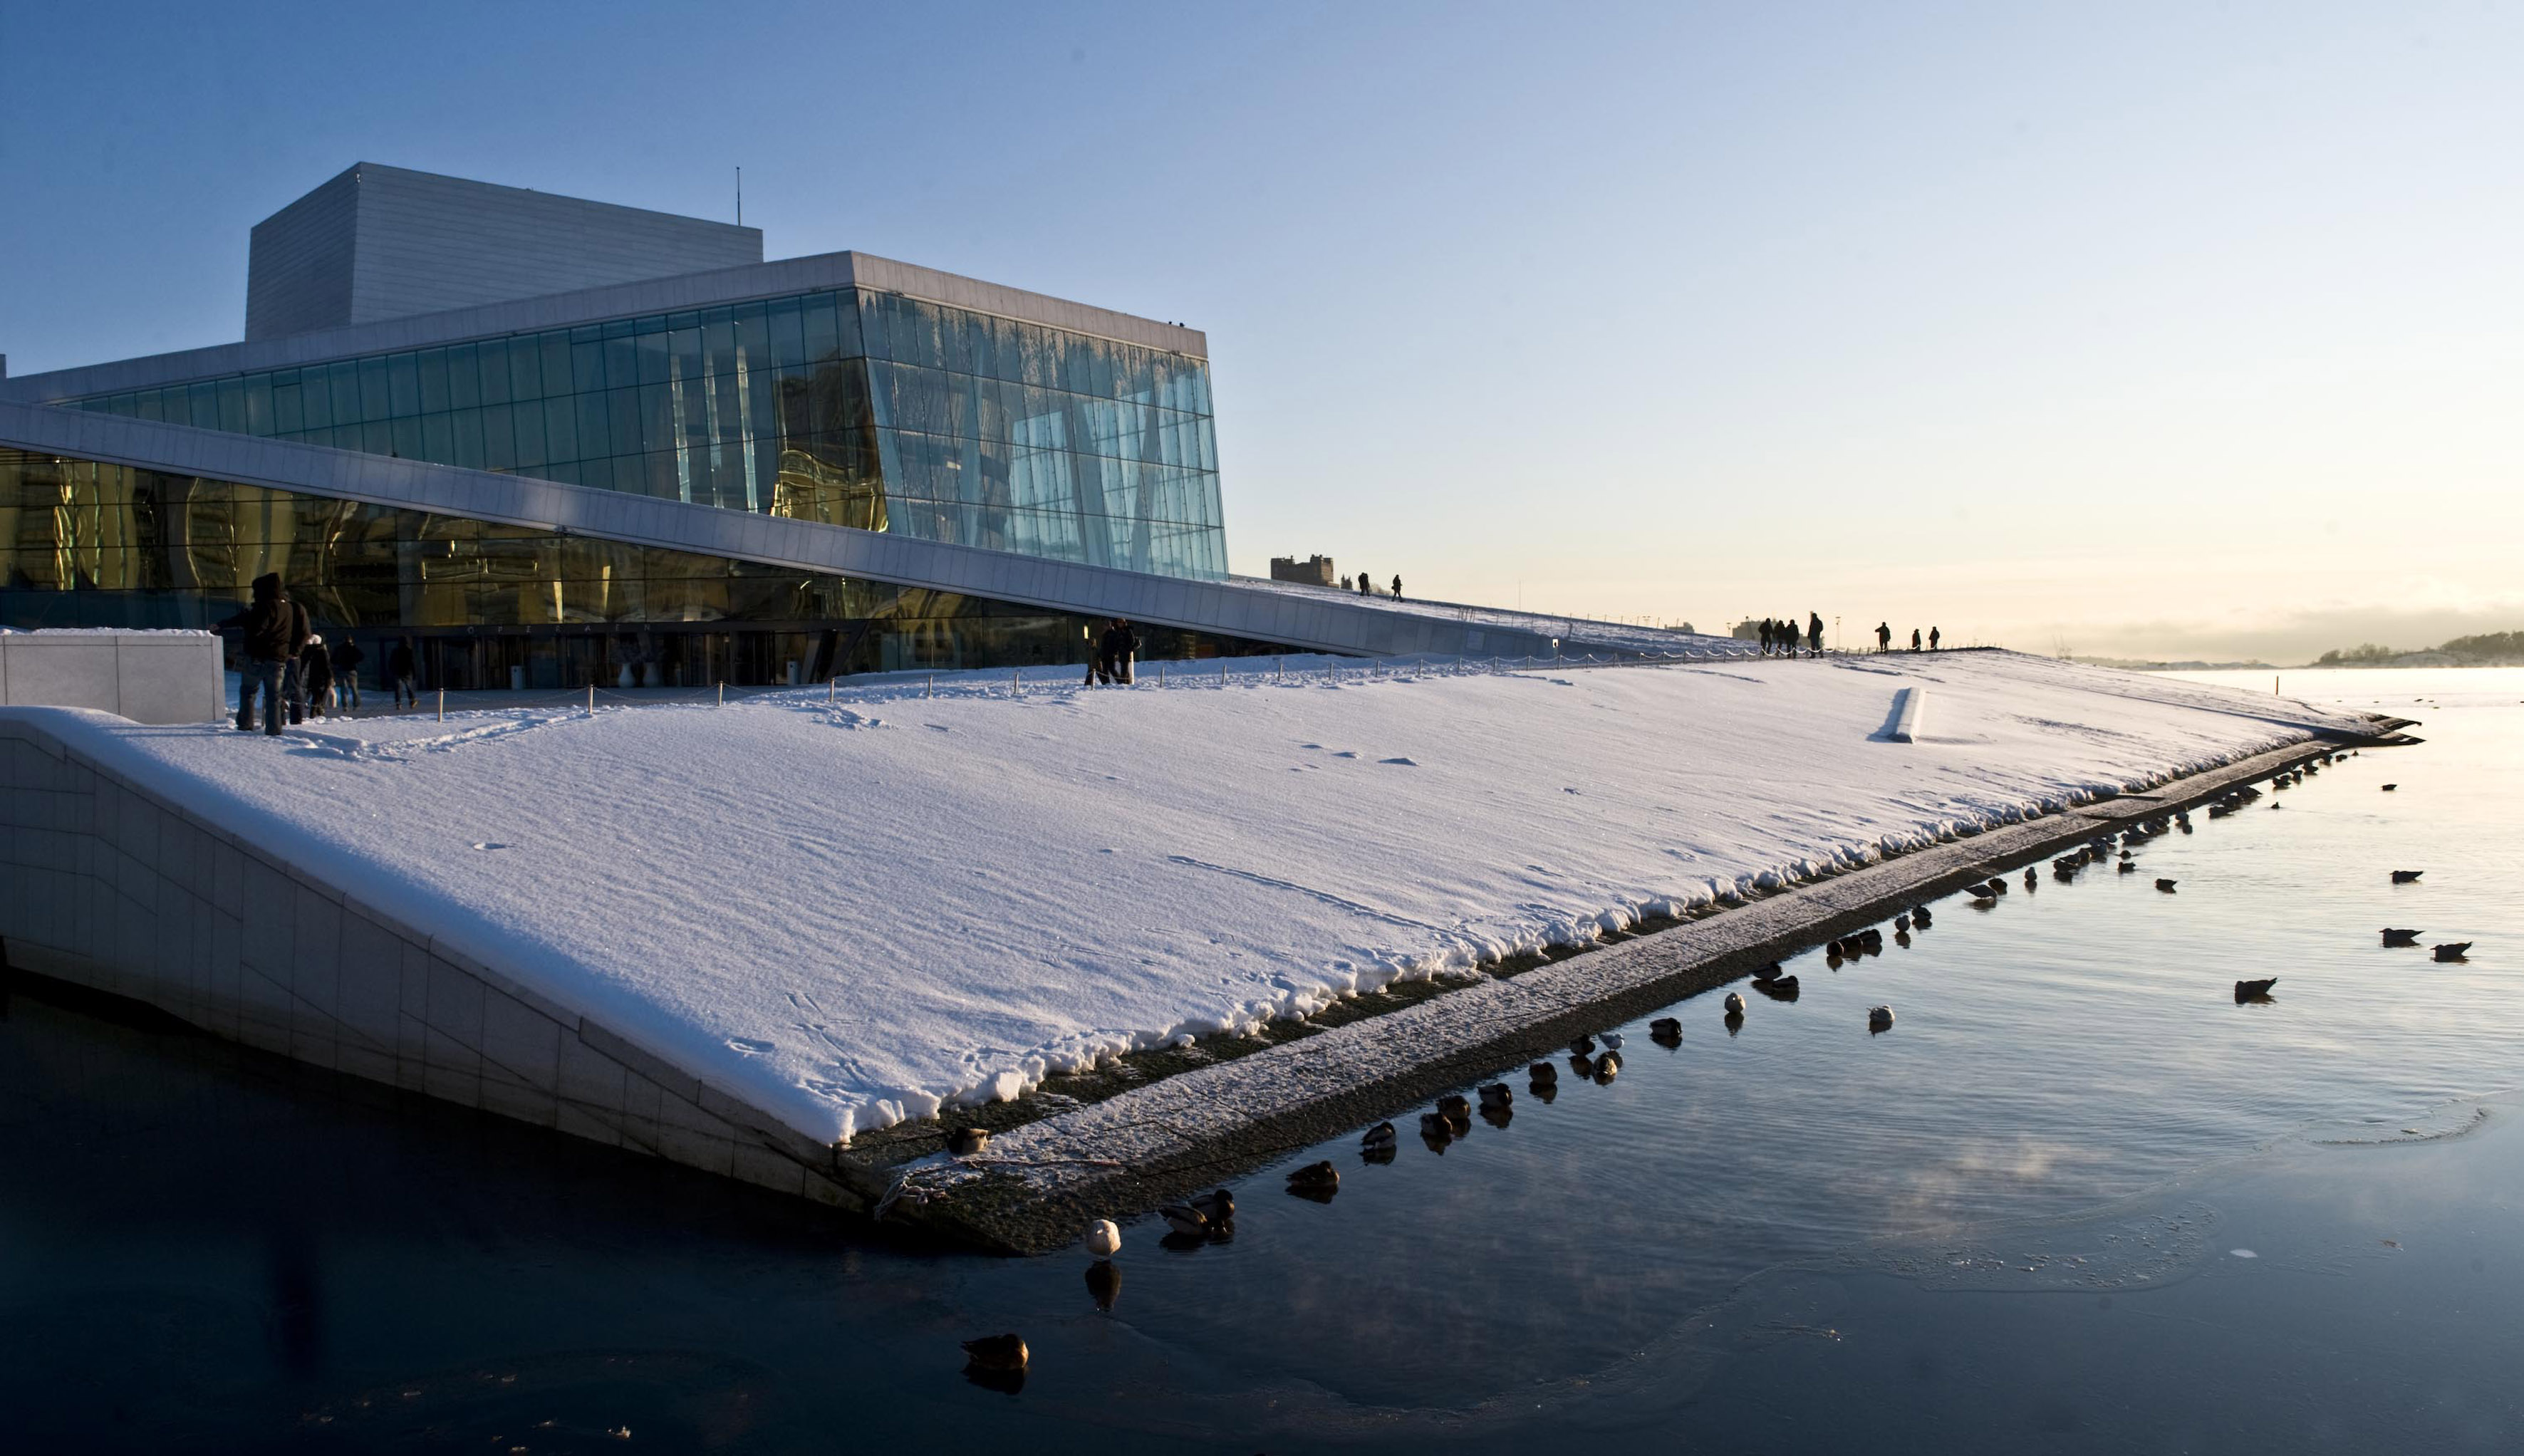 Oslo Opera House, Norway - Most Beautiful Spots